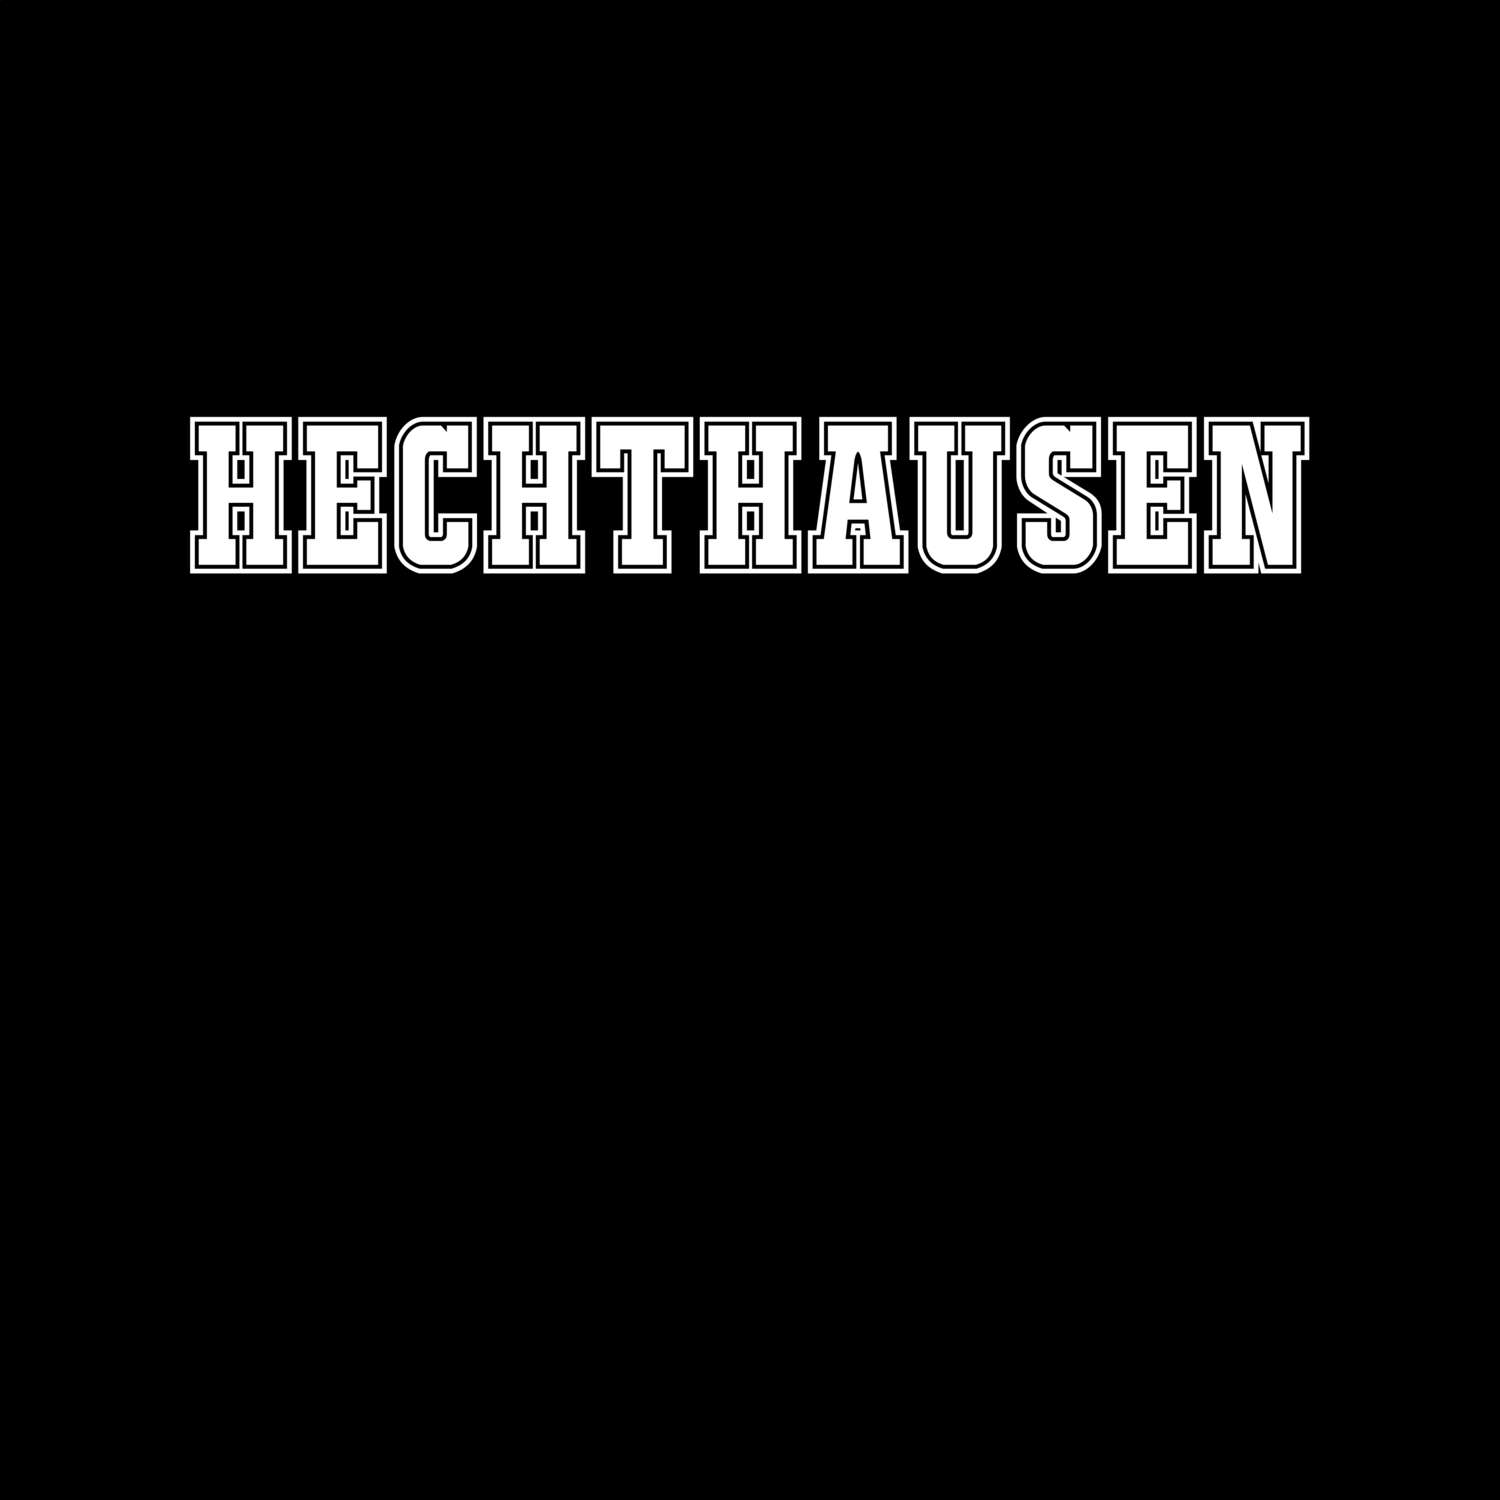 Hechthausen T-Shirt »Classic«